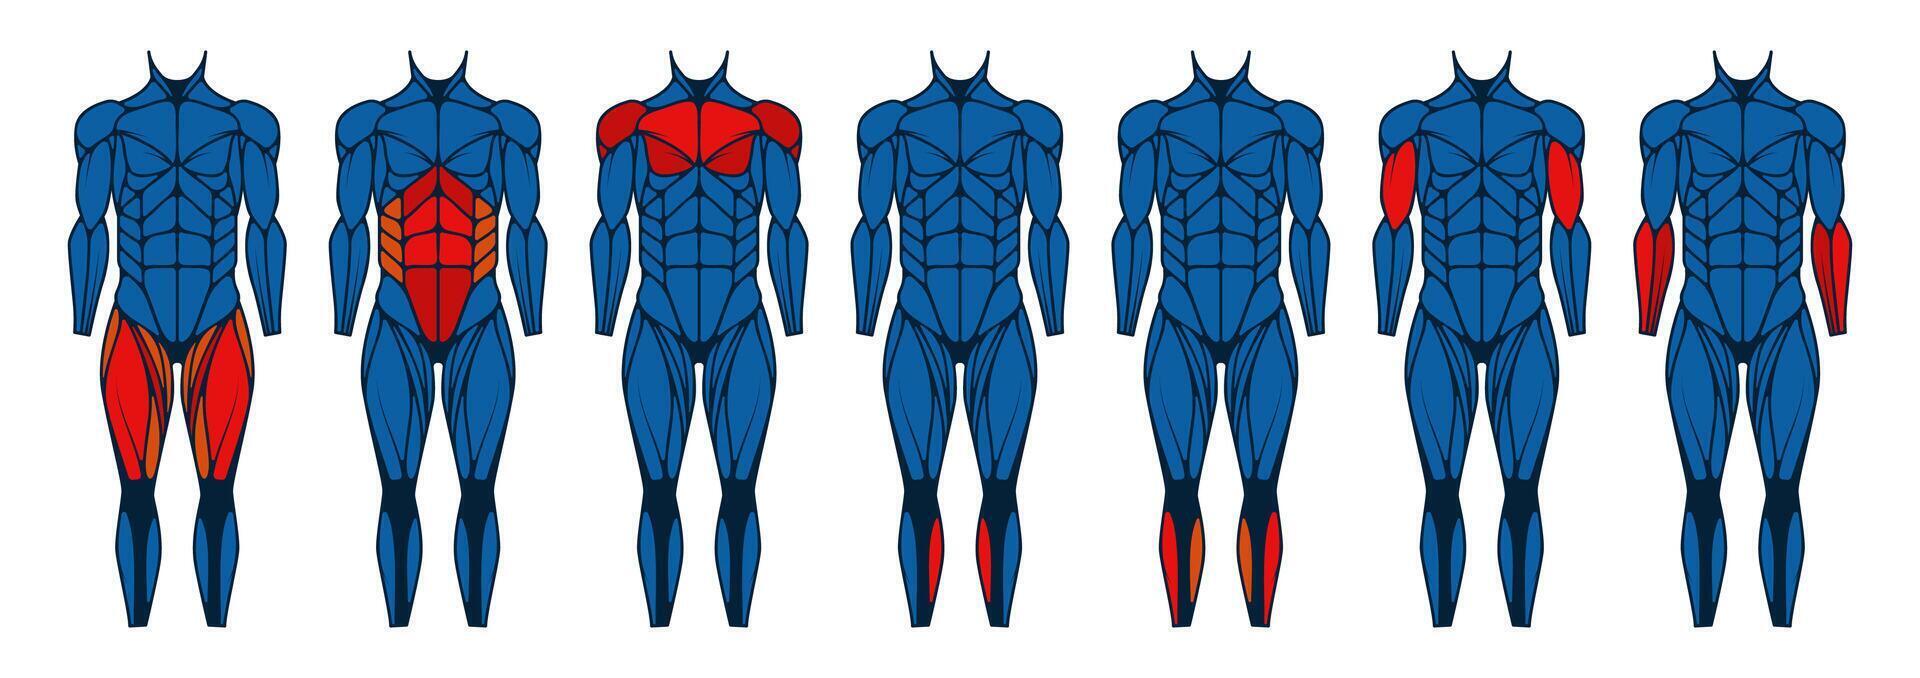 mänsklig kropp muskel främre. anatomi muskler främre se, man ärm och bröst muskler, aktiva manlig bodybuilding med triceps och biceps. vektor uppsättning